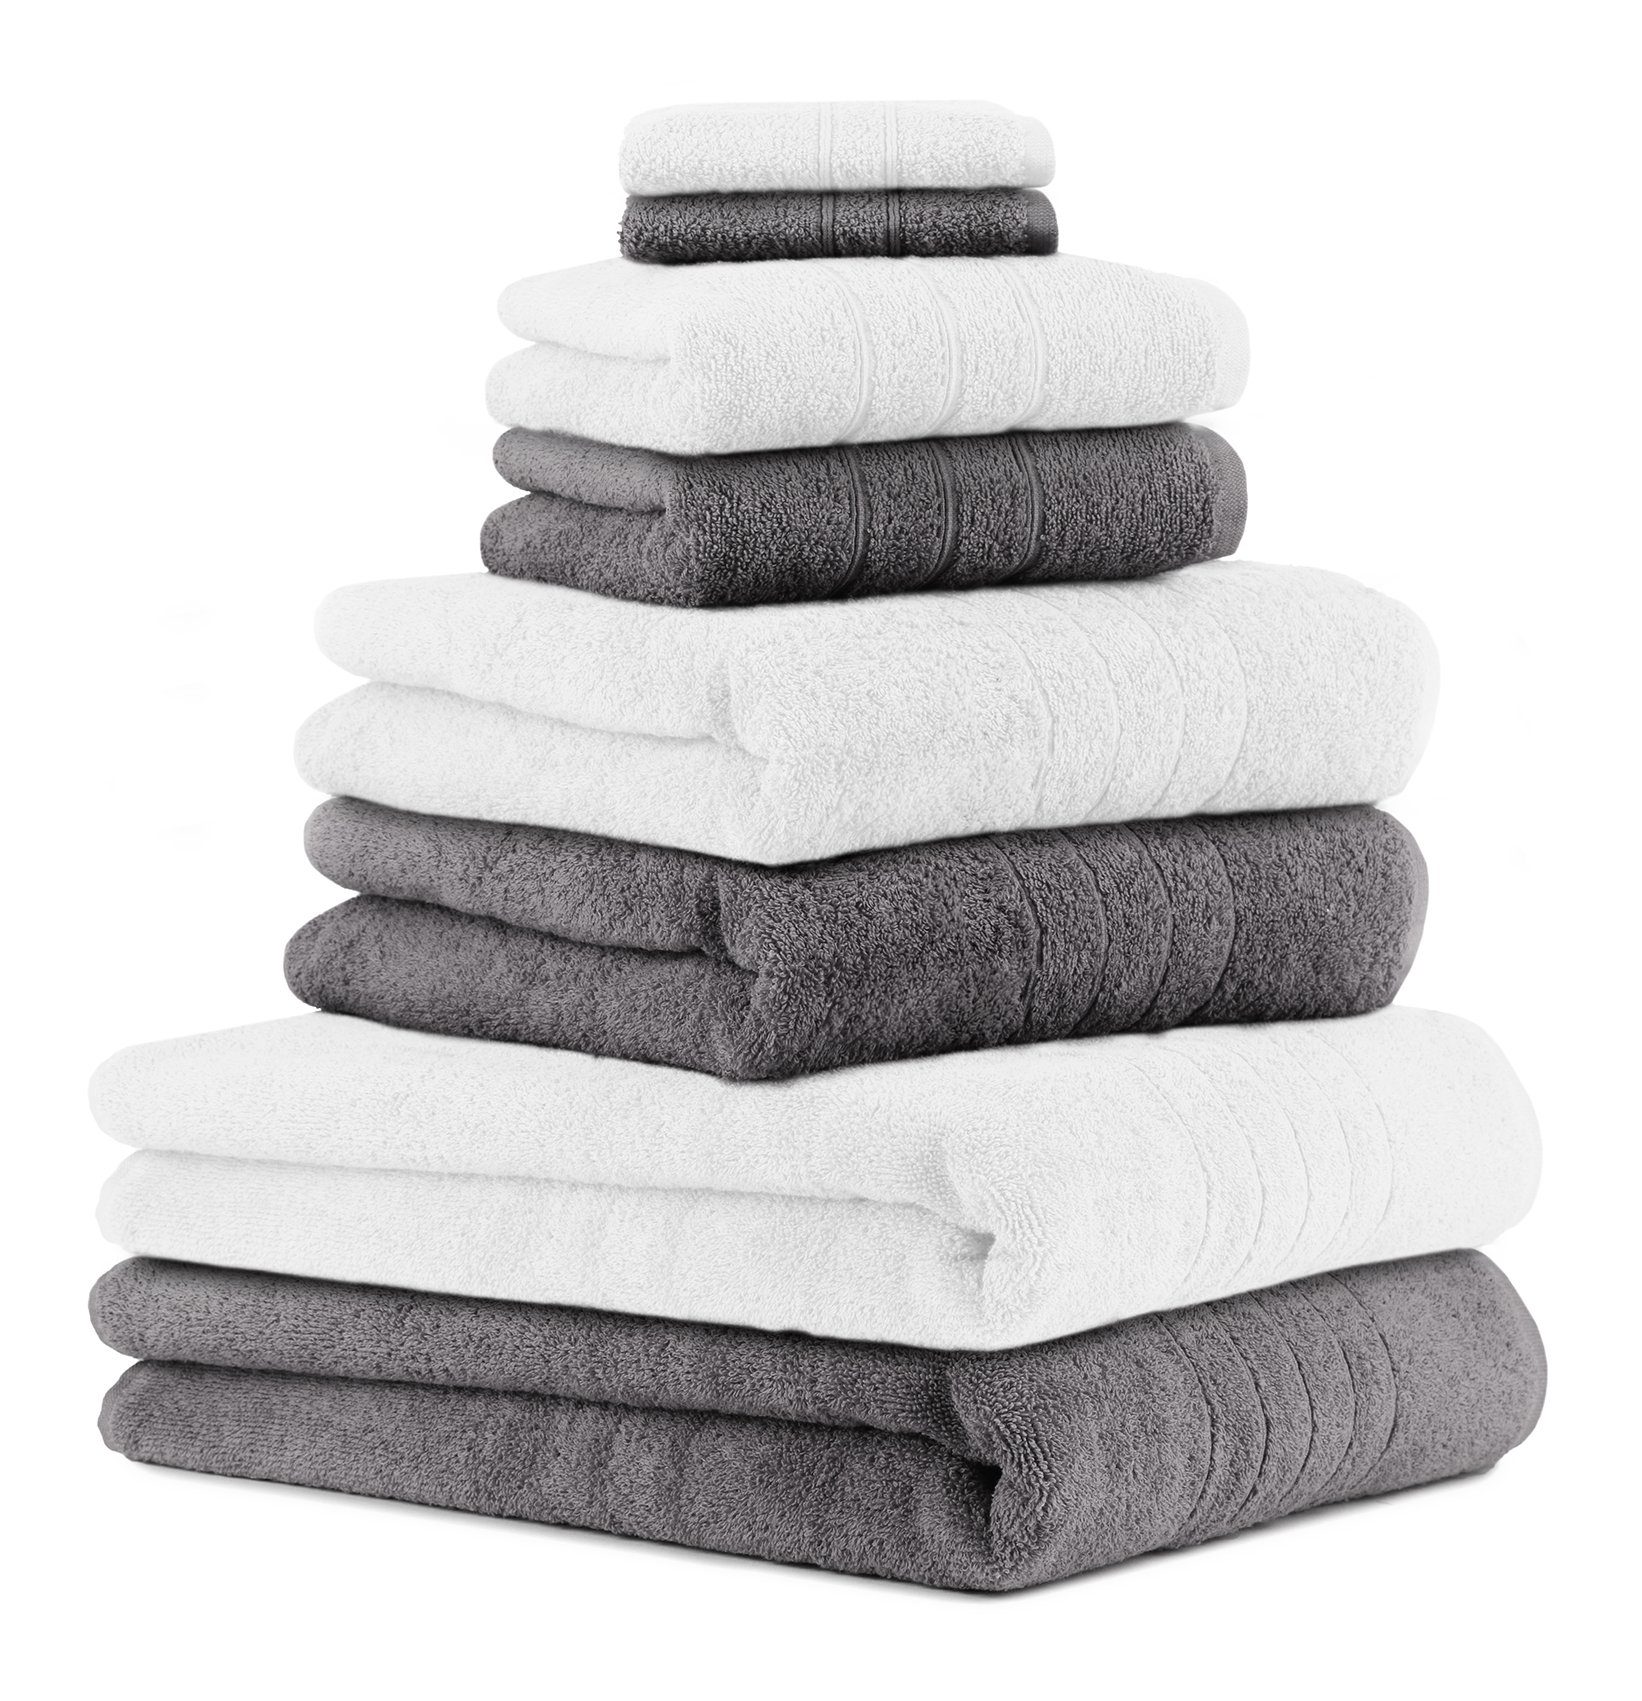 Betz Handtuch Set 8-TLG. Handtuch-Set Deluxe 100% Baumwolle 2 Badetücher 2 Duschtücher 2 Handtücher 2 Seiftücher Farbe weiß und anthrazit grau, 100% Baumwolle, (8-tlg)